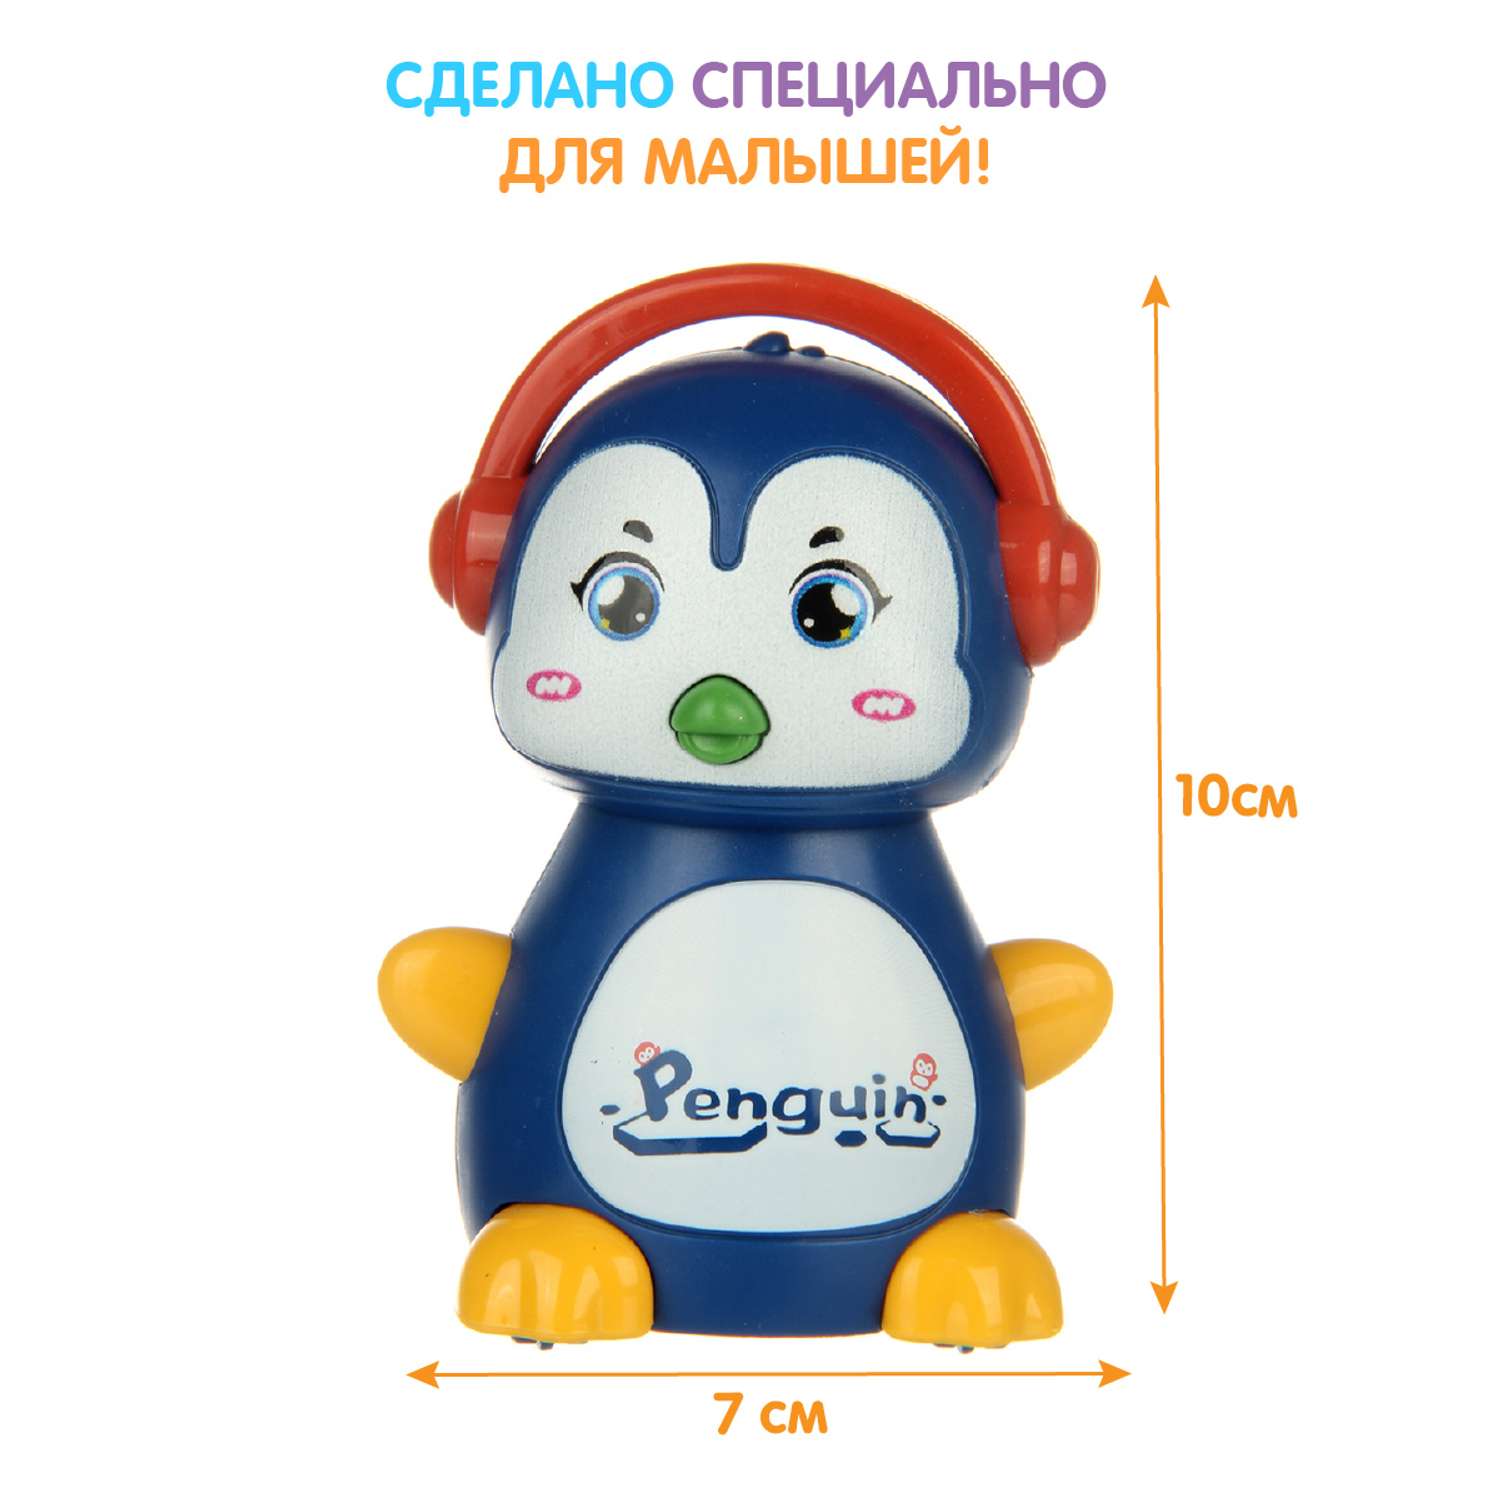 Развивающая игрушка Ути Пути Покатушка Пингвин со звуками - фото 1